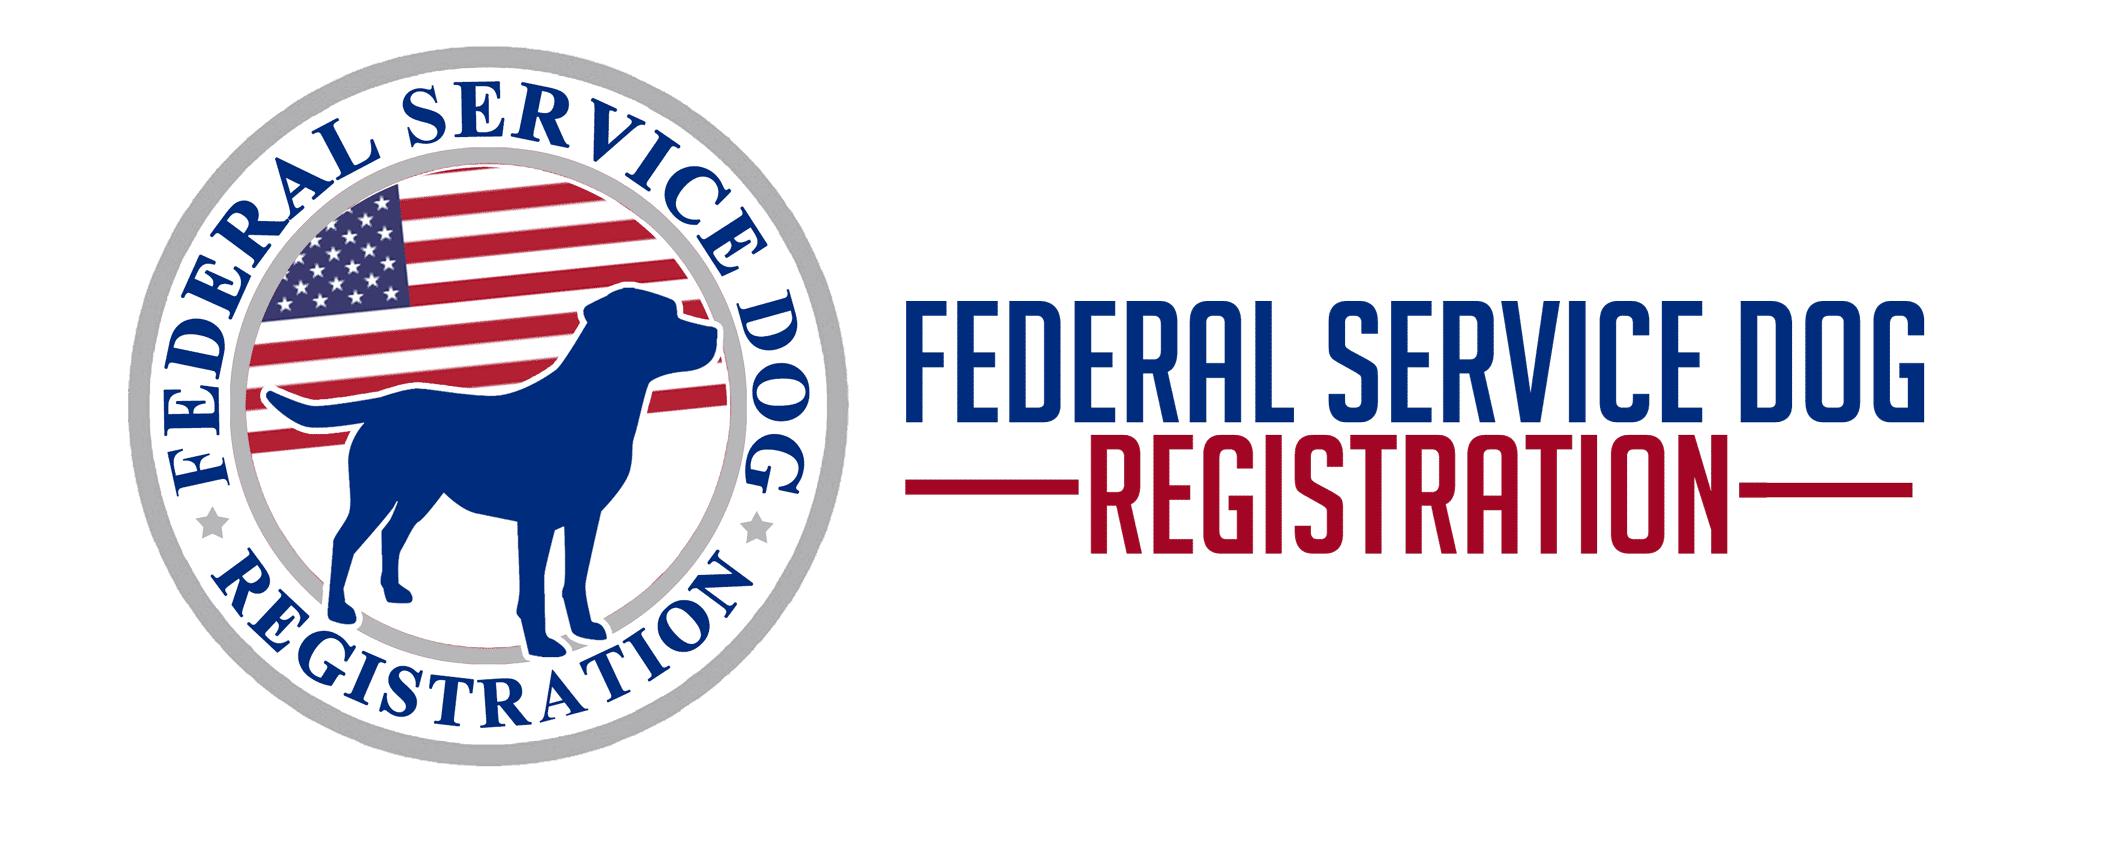 Federal Service Dog Registration | Emotional Support Dog Registration |